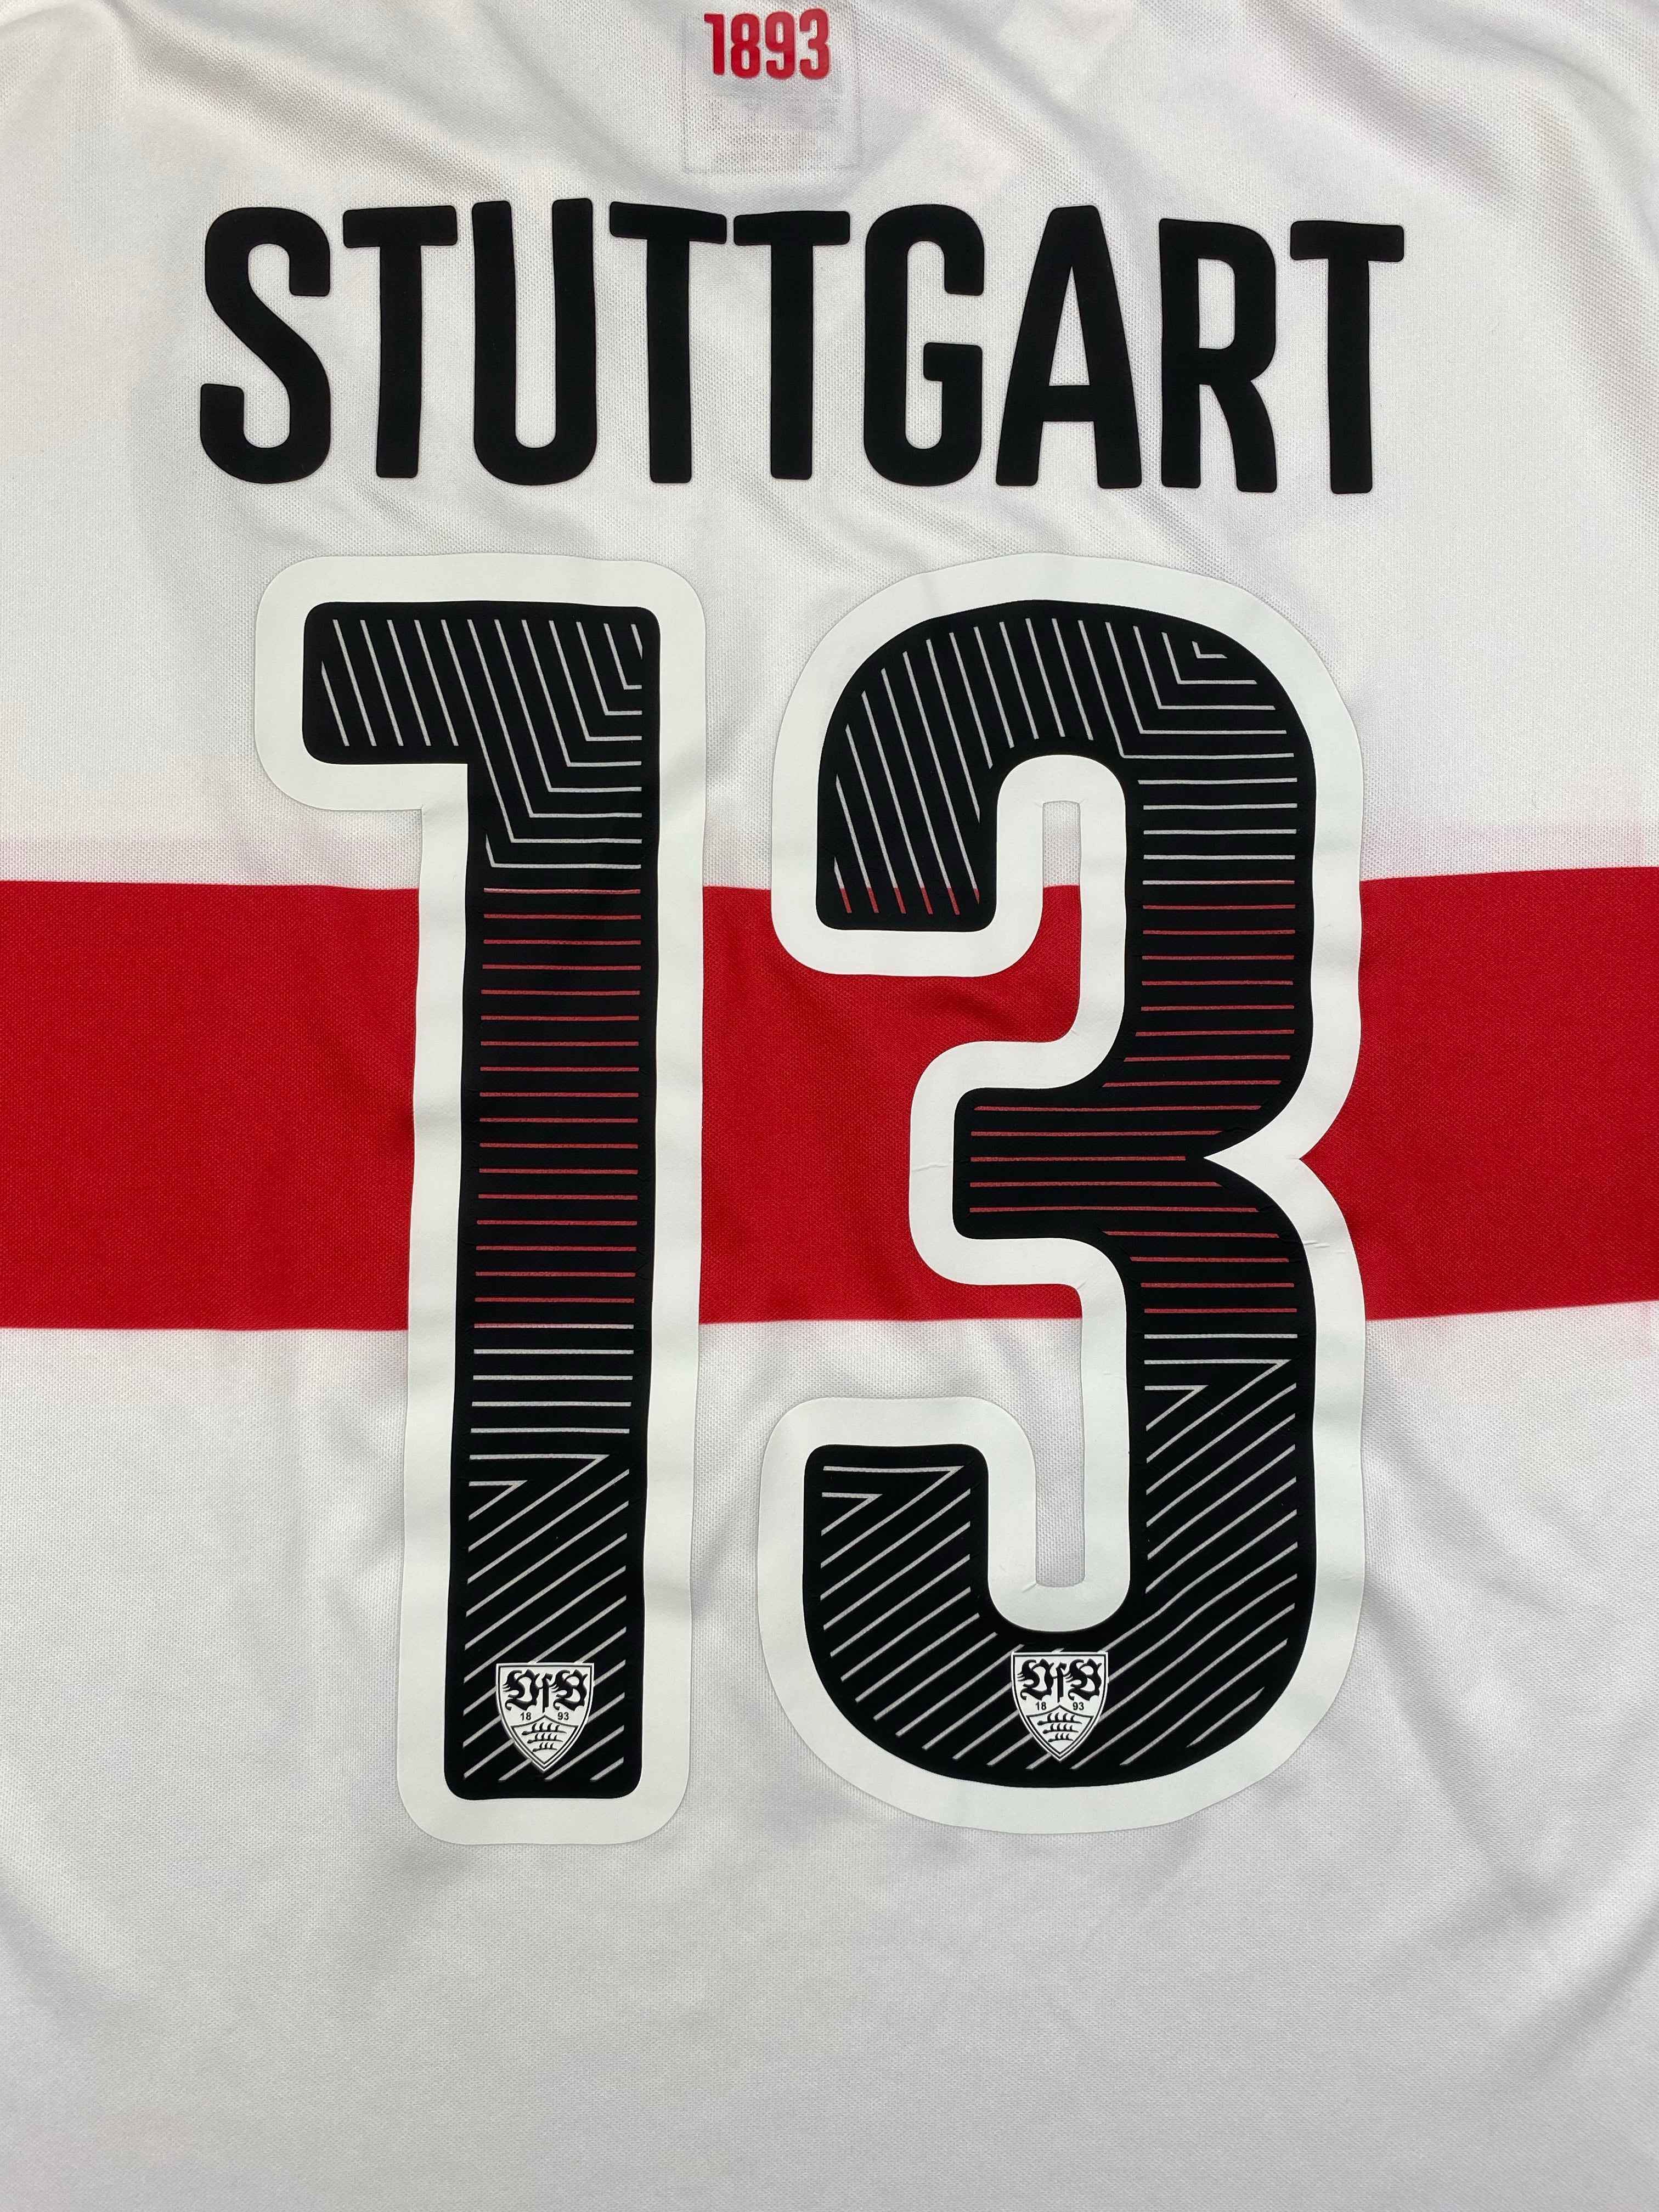 2015/16 Stuttgart U17 *Edición del jugador* Camiseta local L/S n.º 13 (M) 9/10 